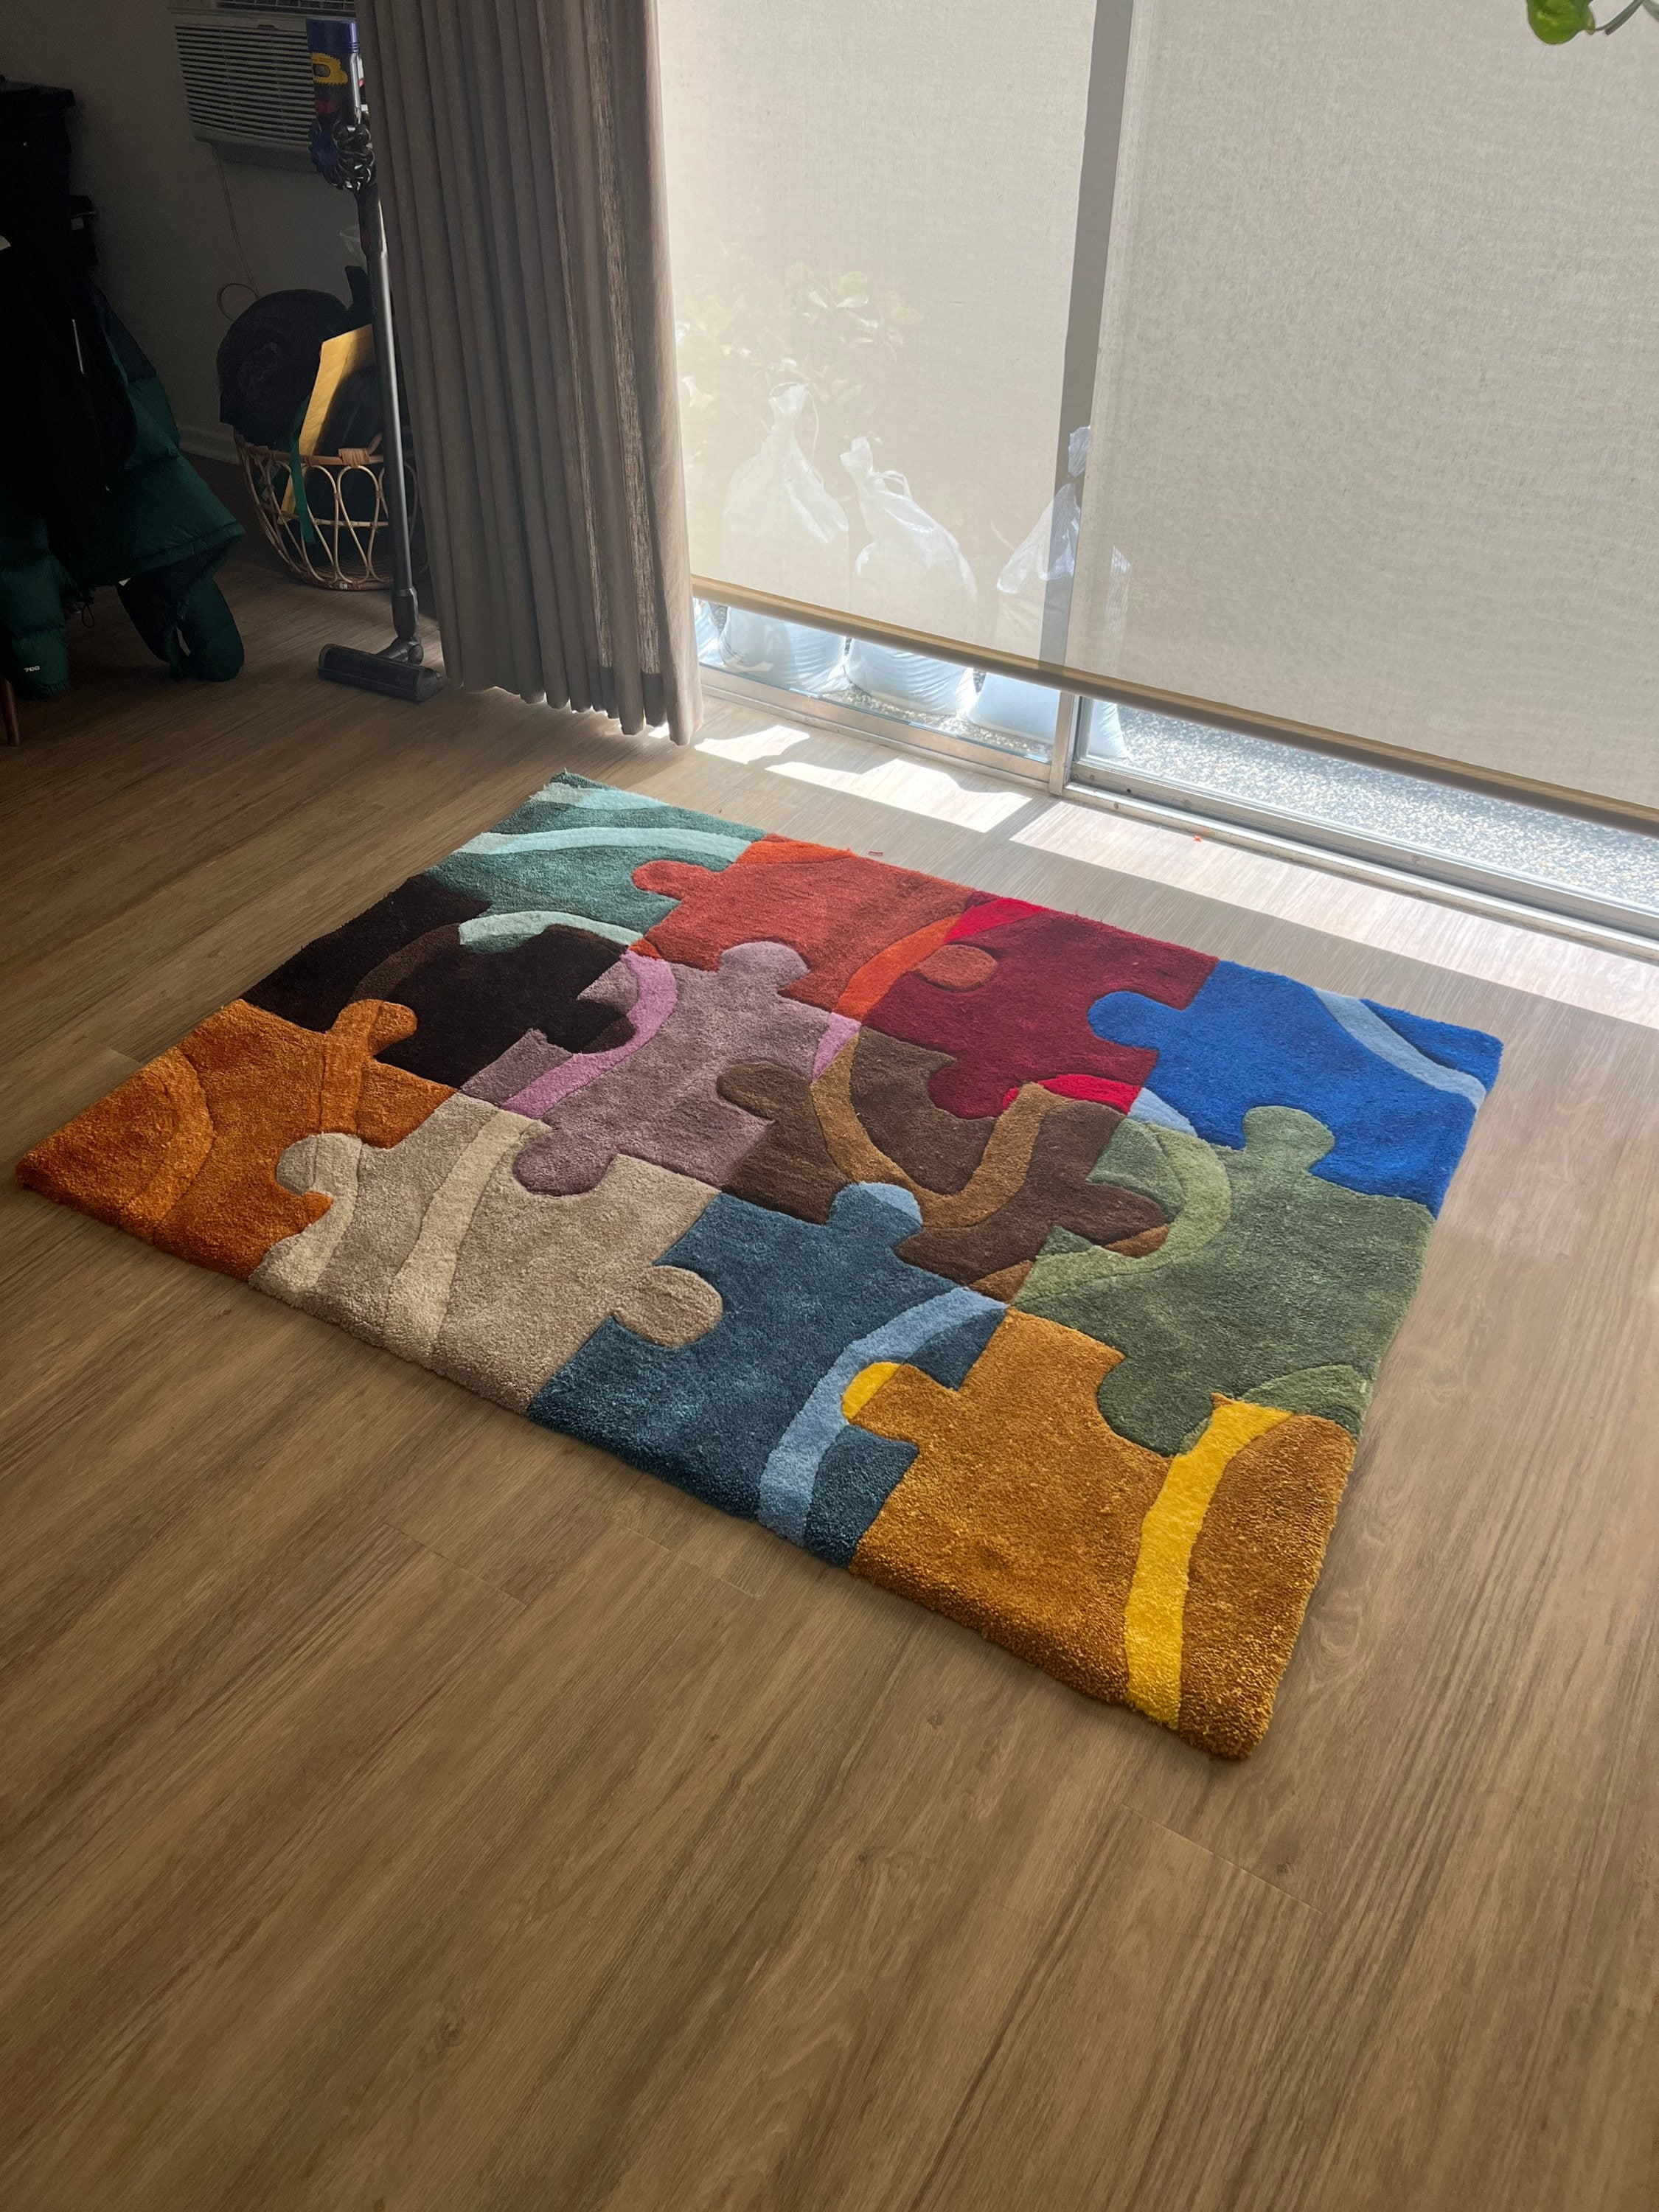 Handmade custom tufted puzzle area rug /jigsaw puzzle rug/handcrafted rug/  16 block of puzzle rug